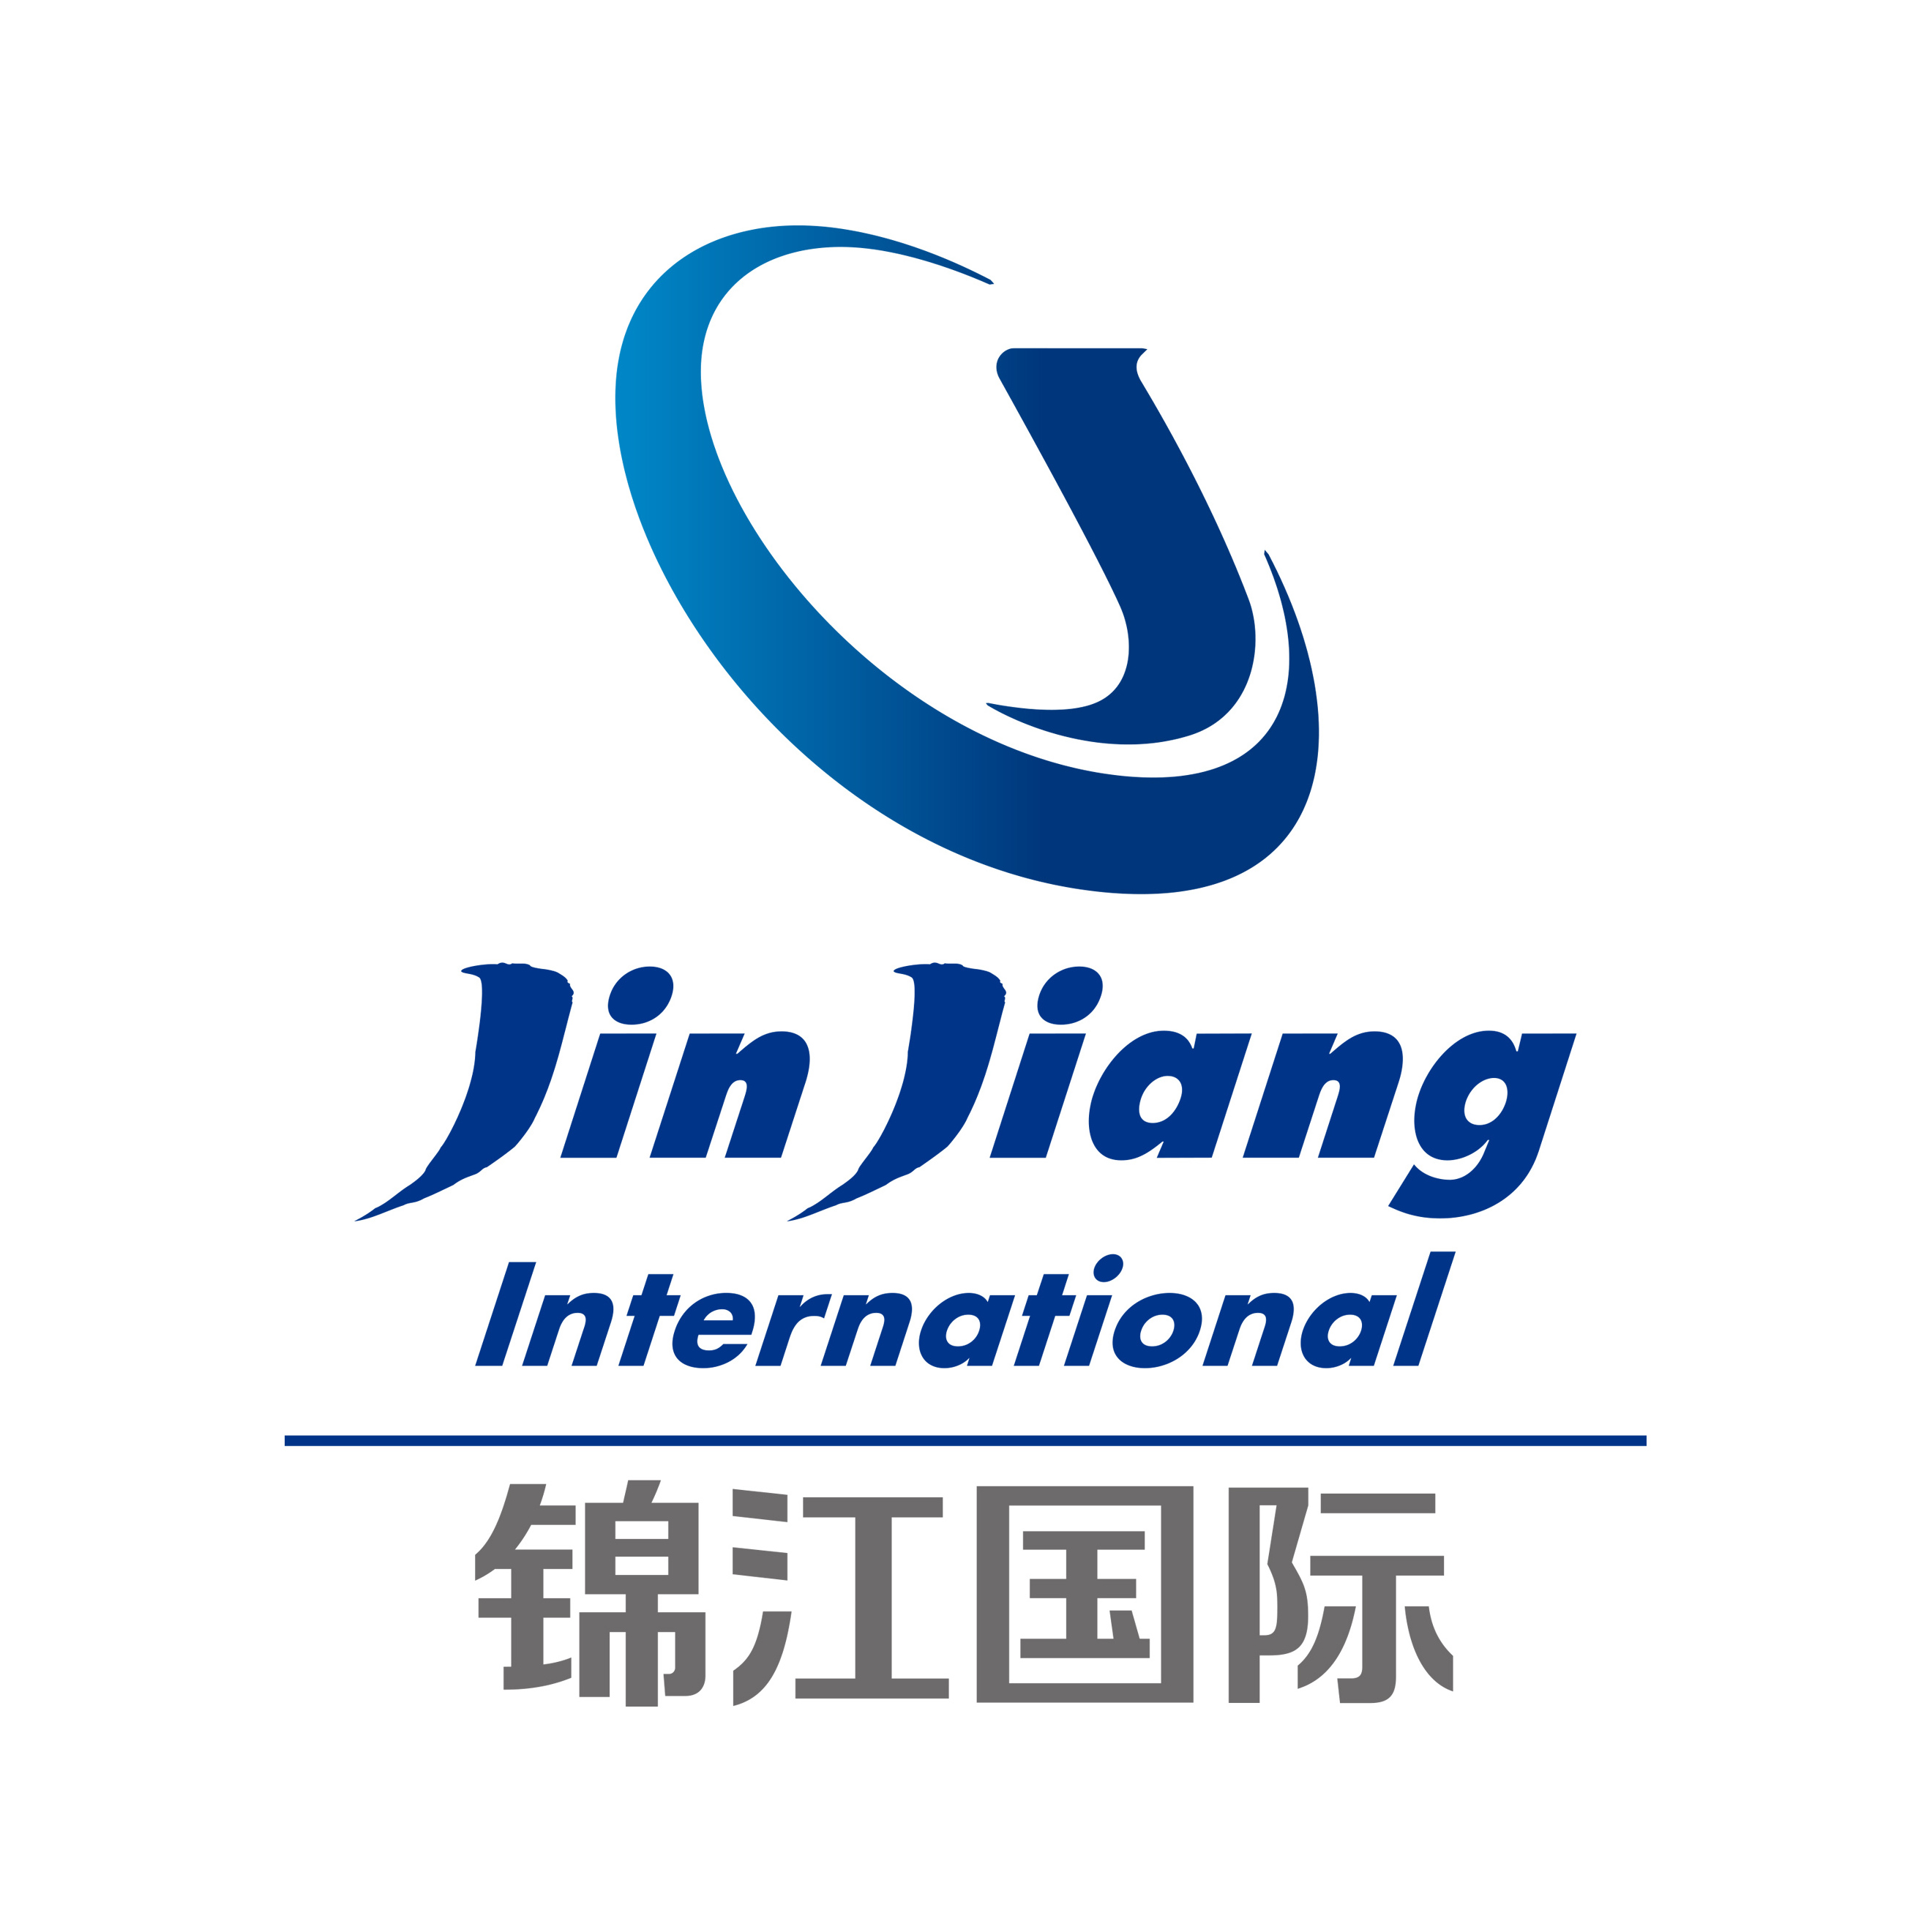 锦江酒店中国区logo图片